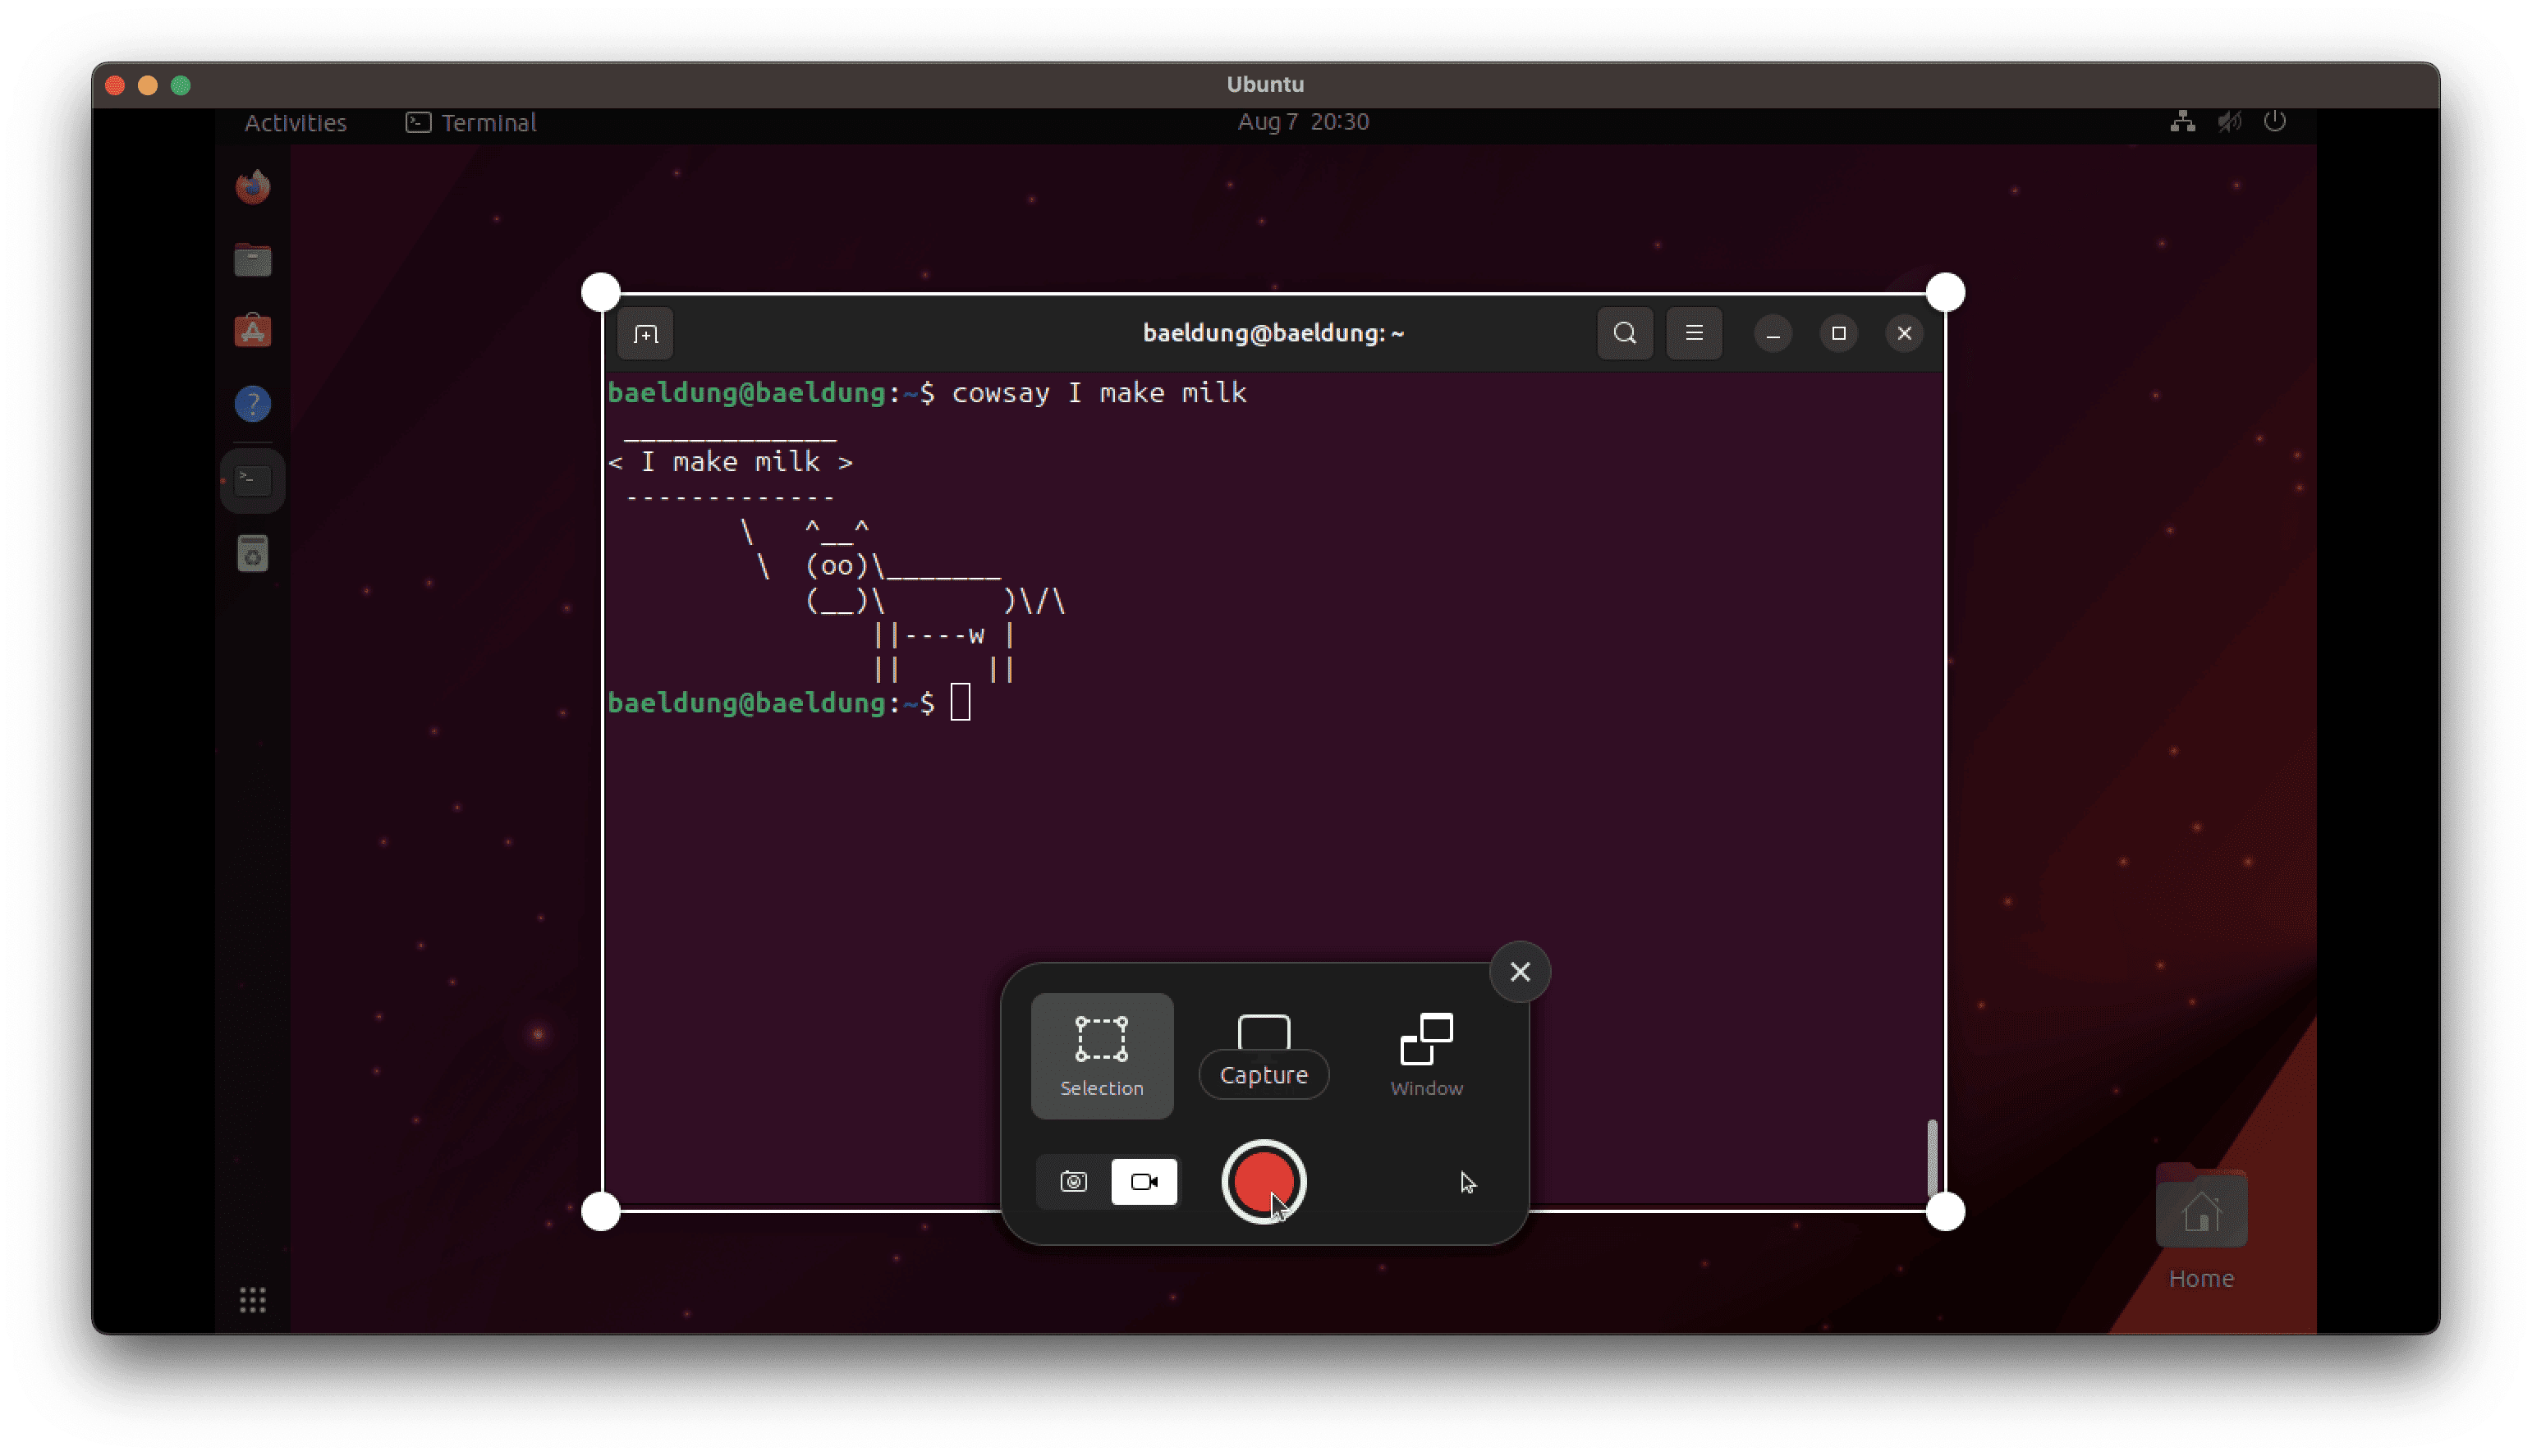 Recording Screen on Ubuntu